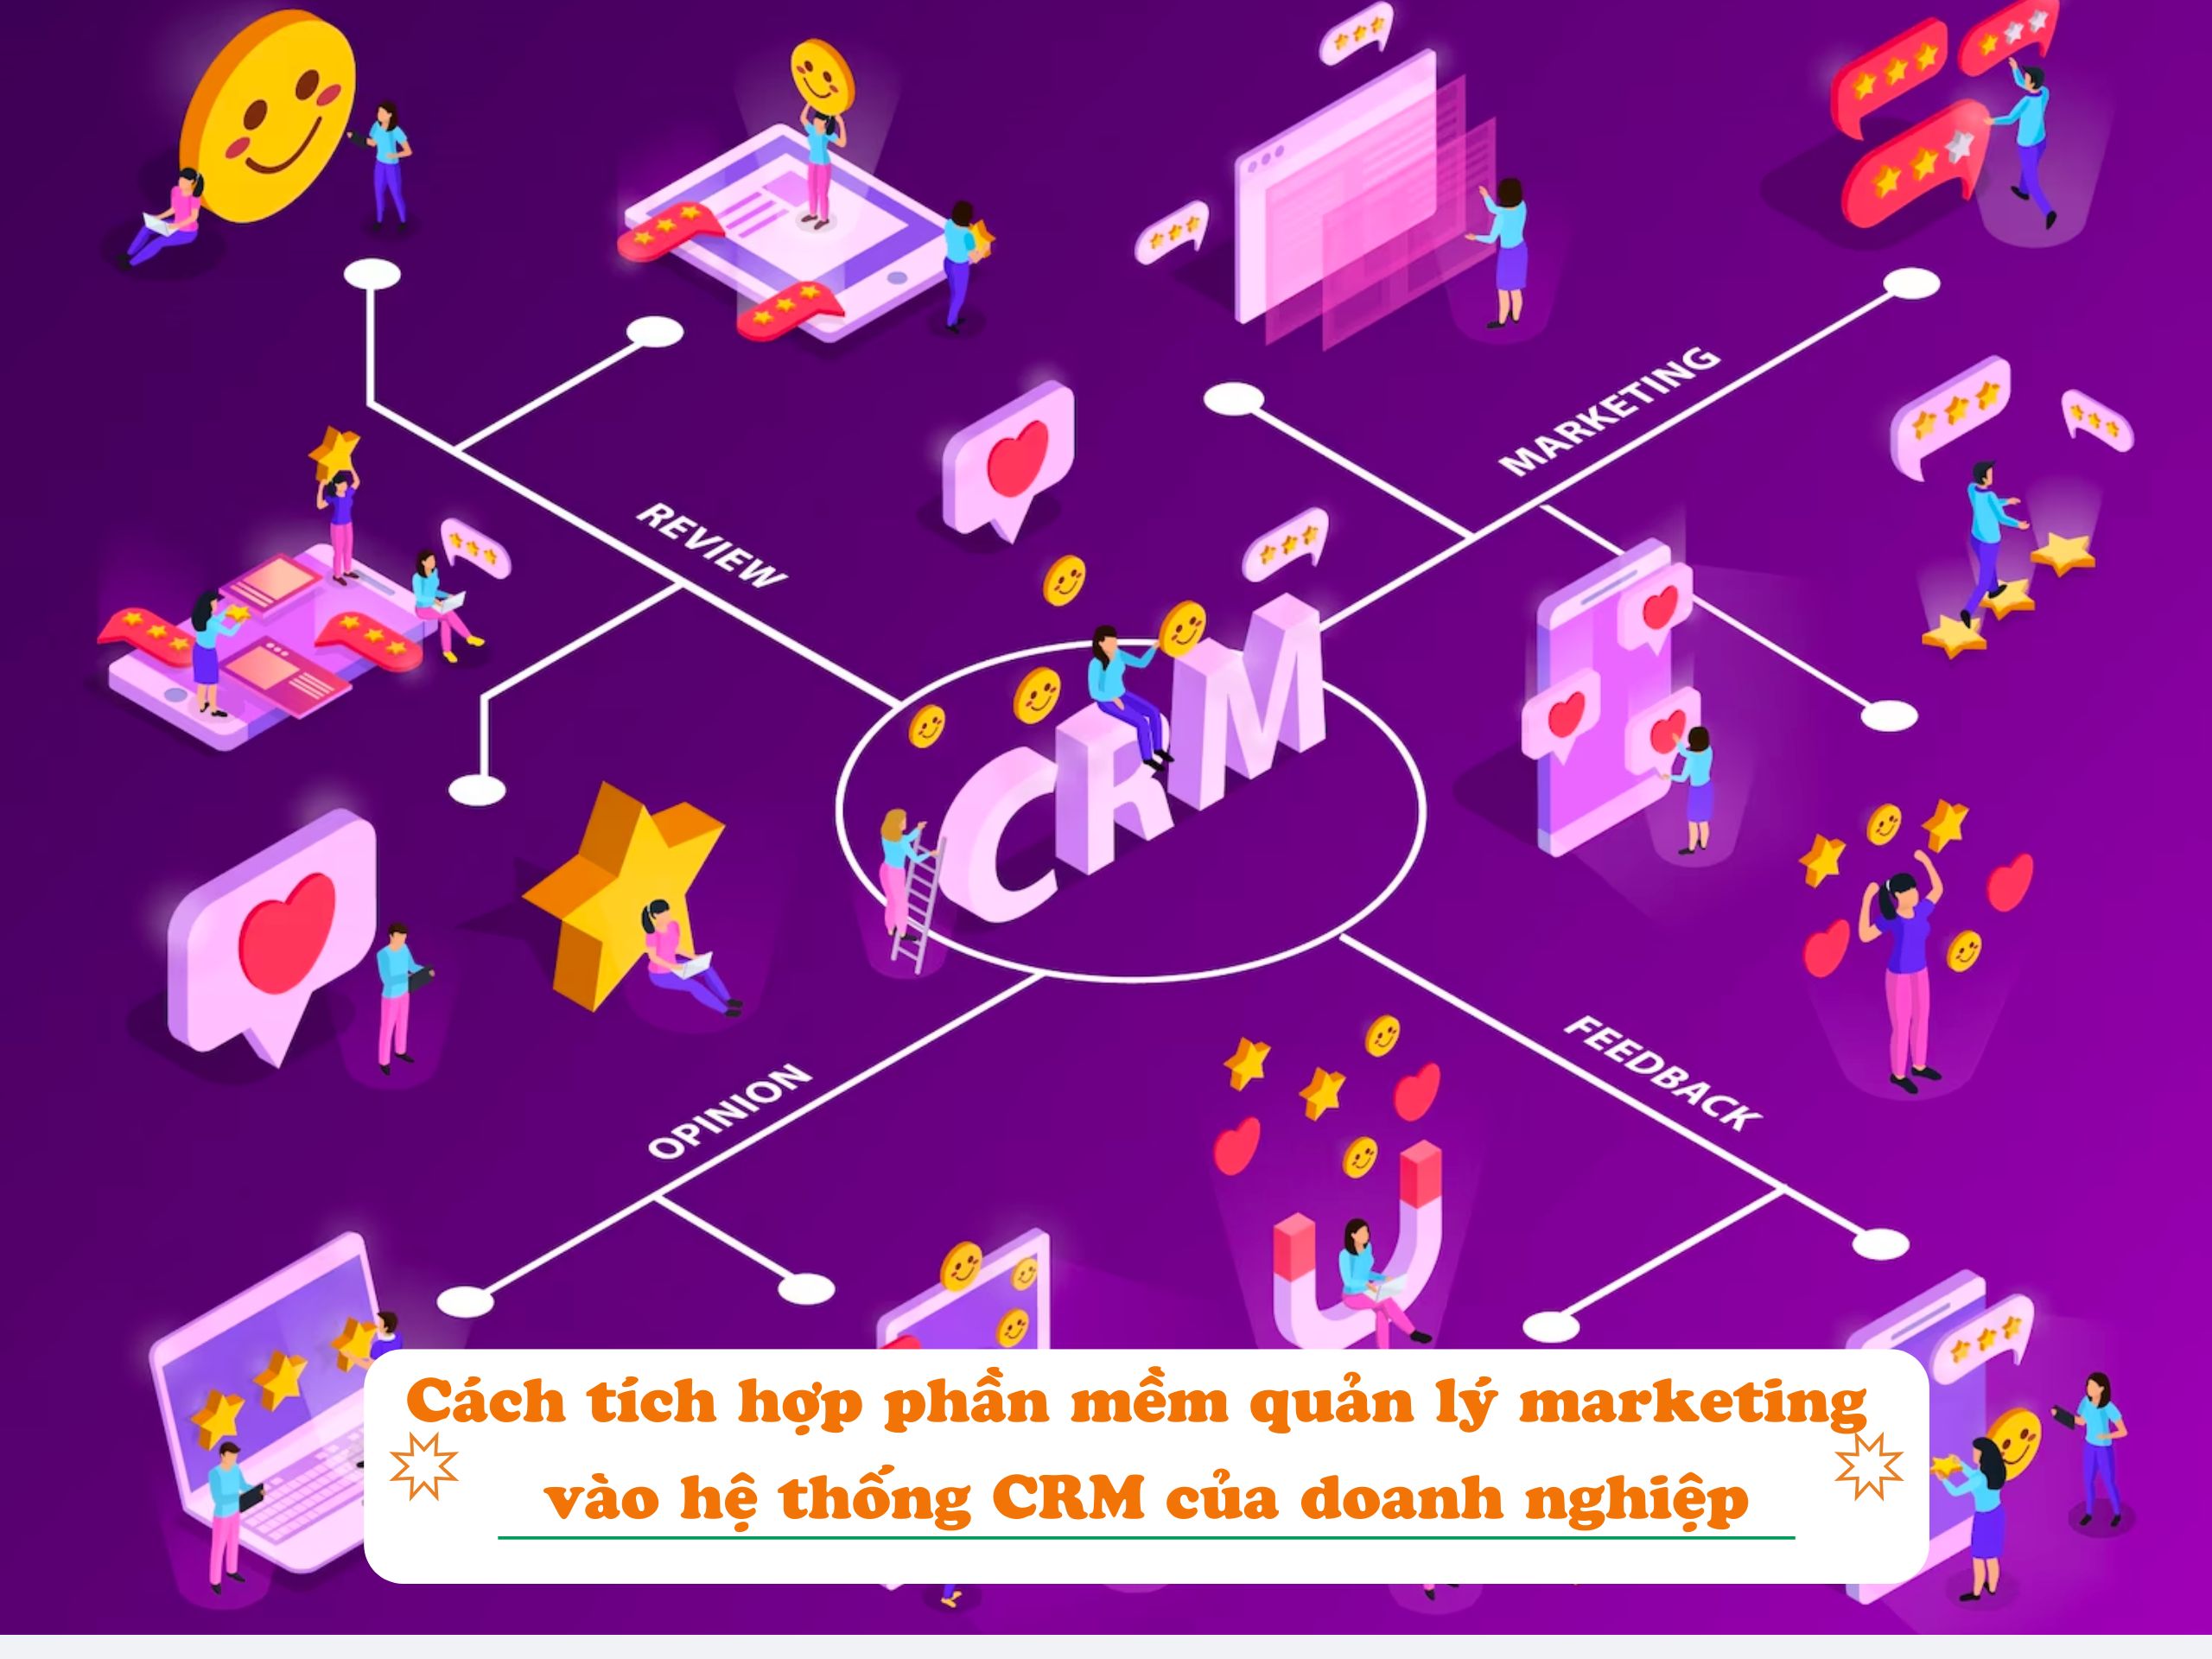 Cách tích hợp phần mềm quản lý marketing vào hệ thống CRM của doanh nghiệp